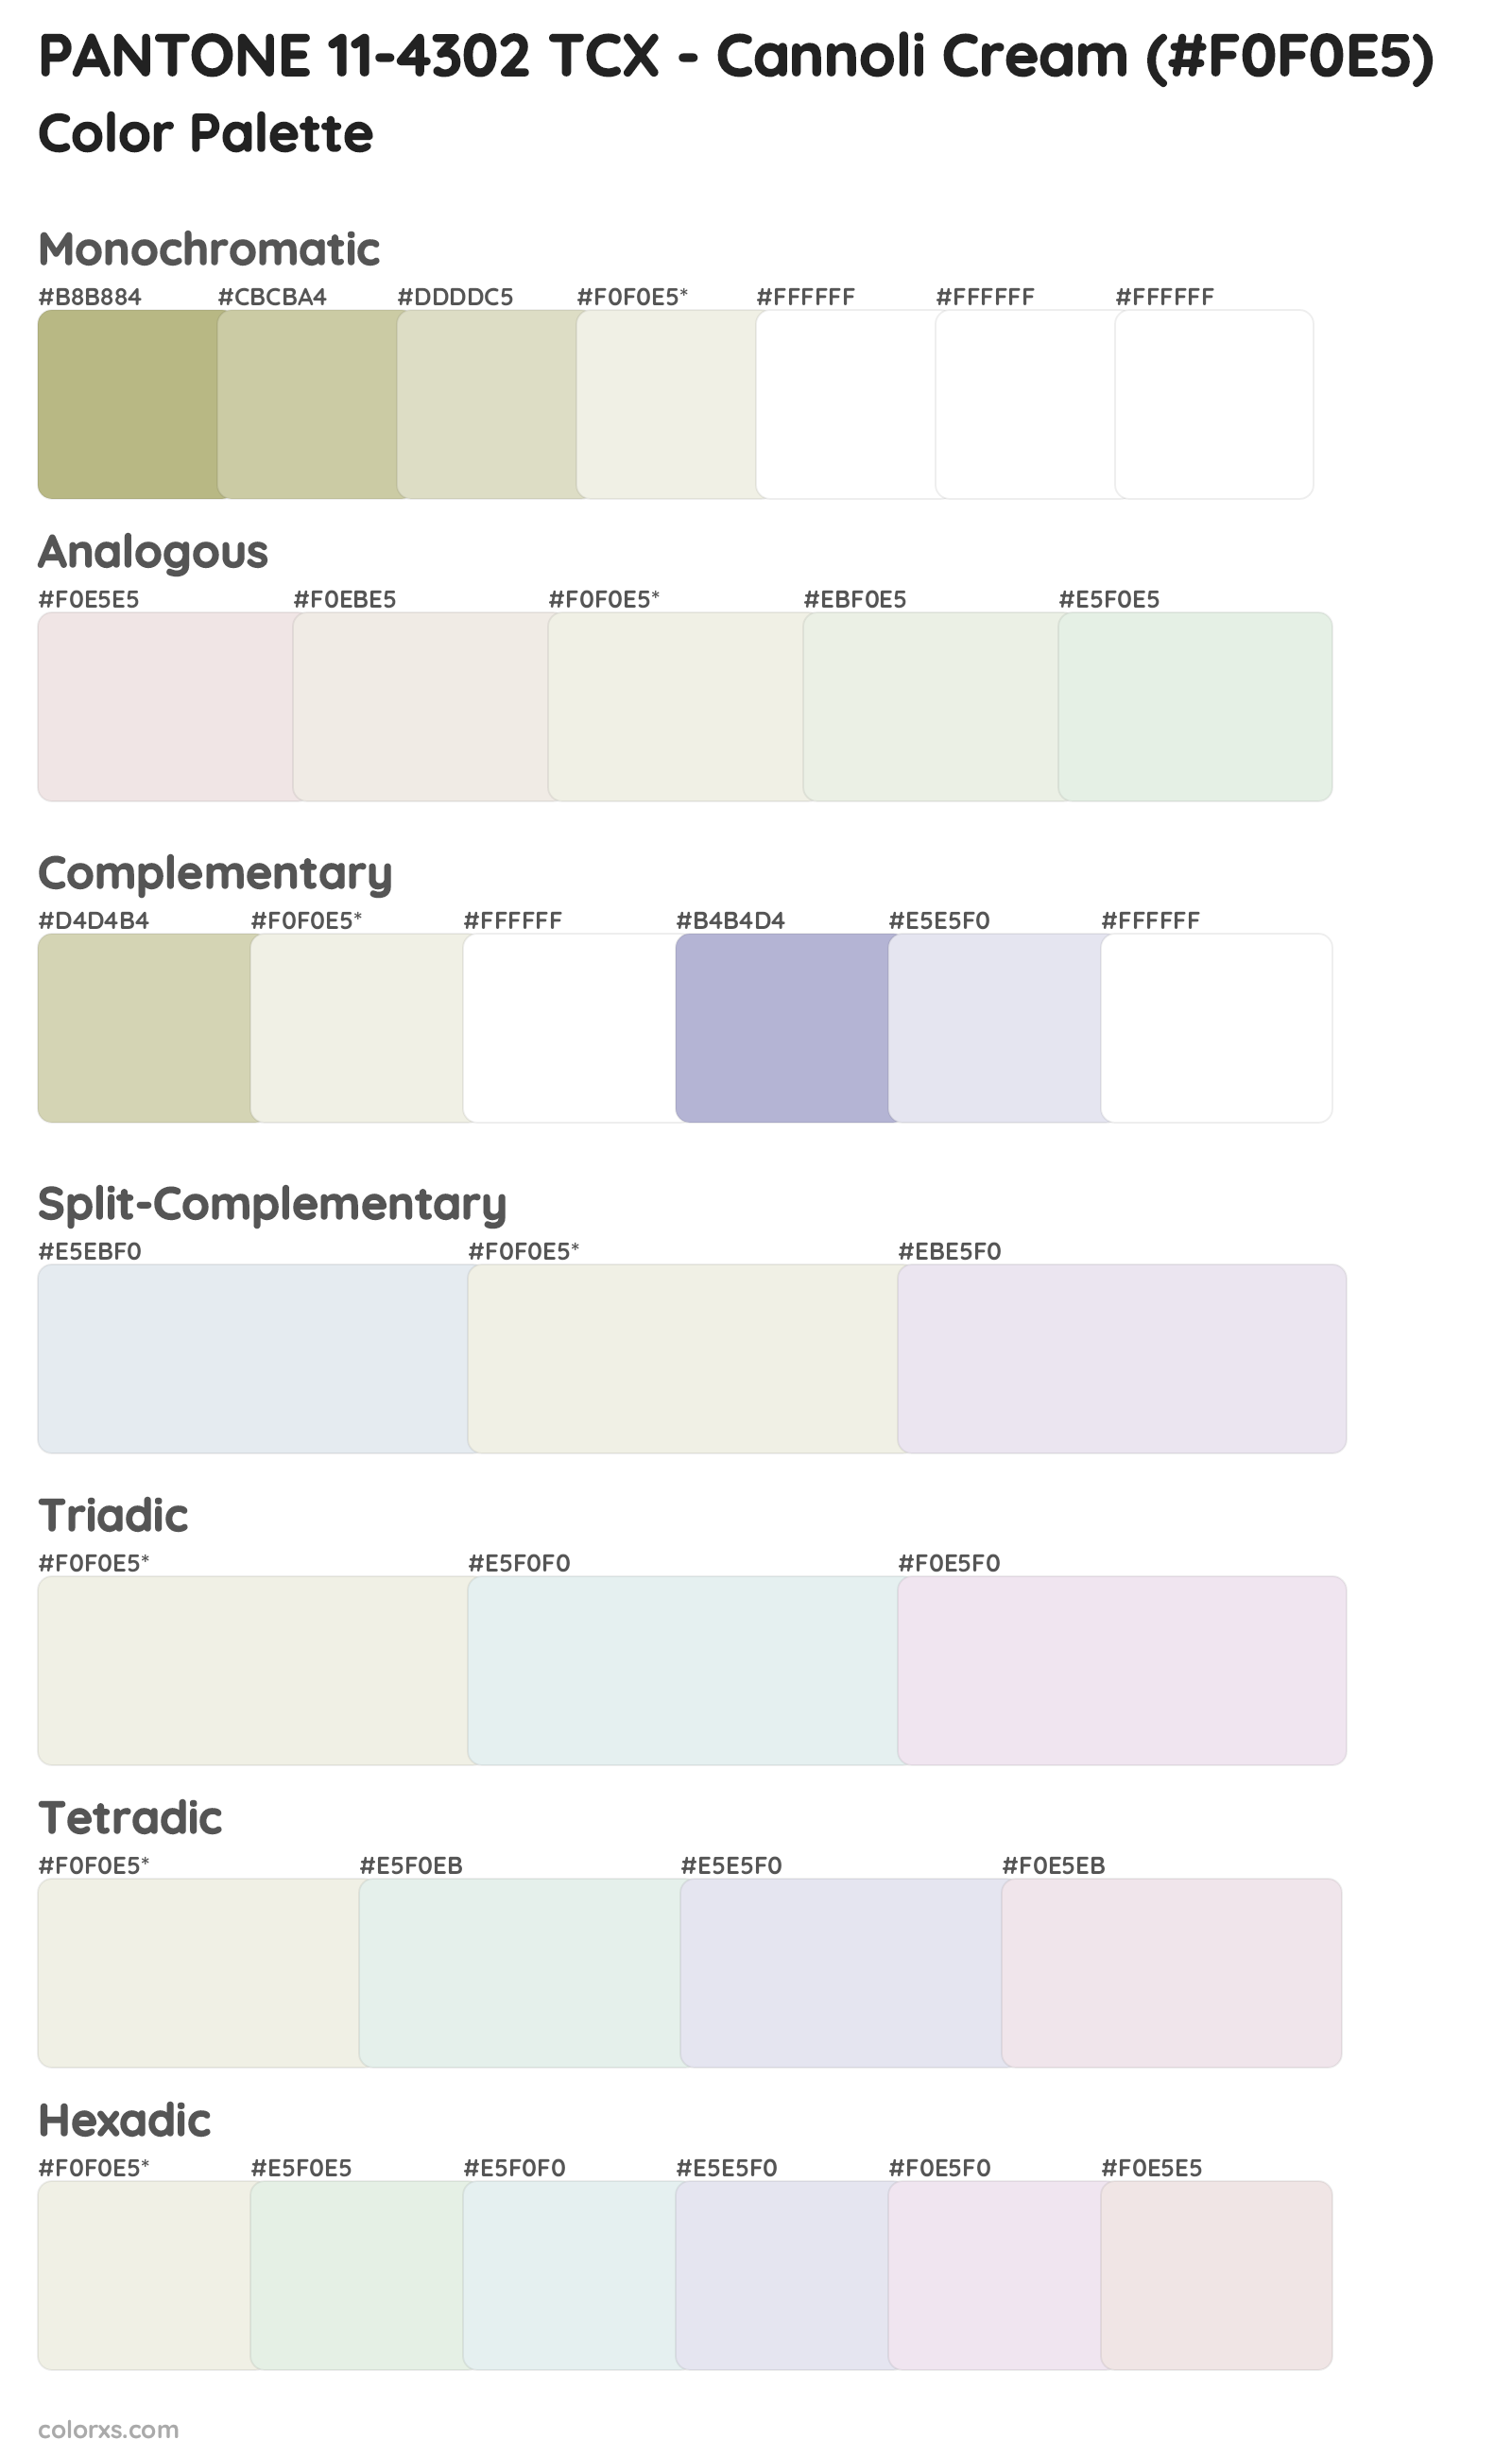 PANTONE 11-4302 TCX - Cannoli Cream Color Scheme Palettes